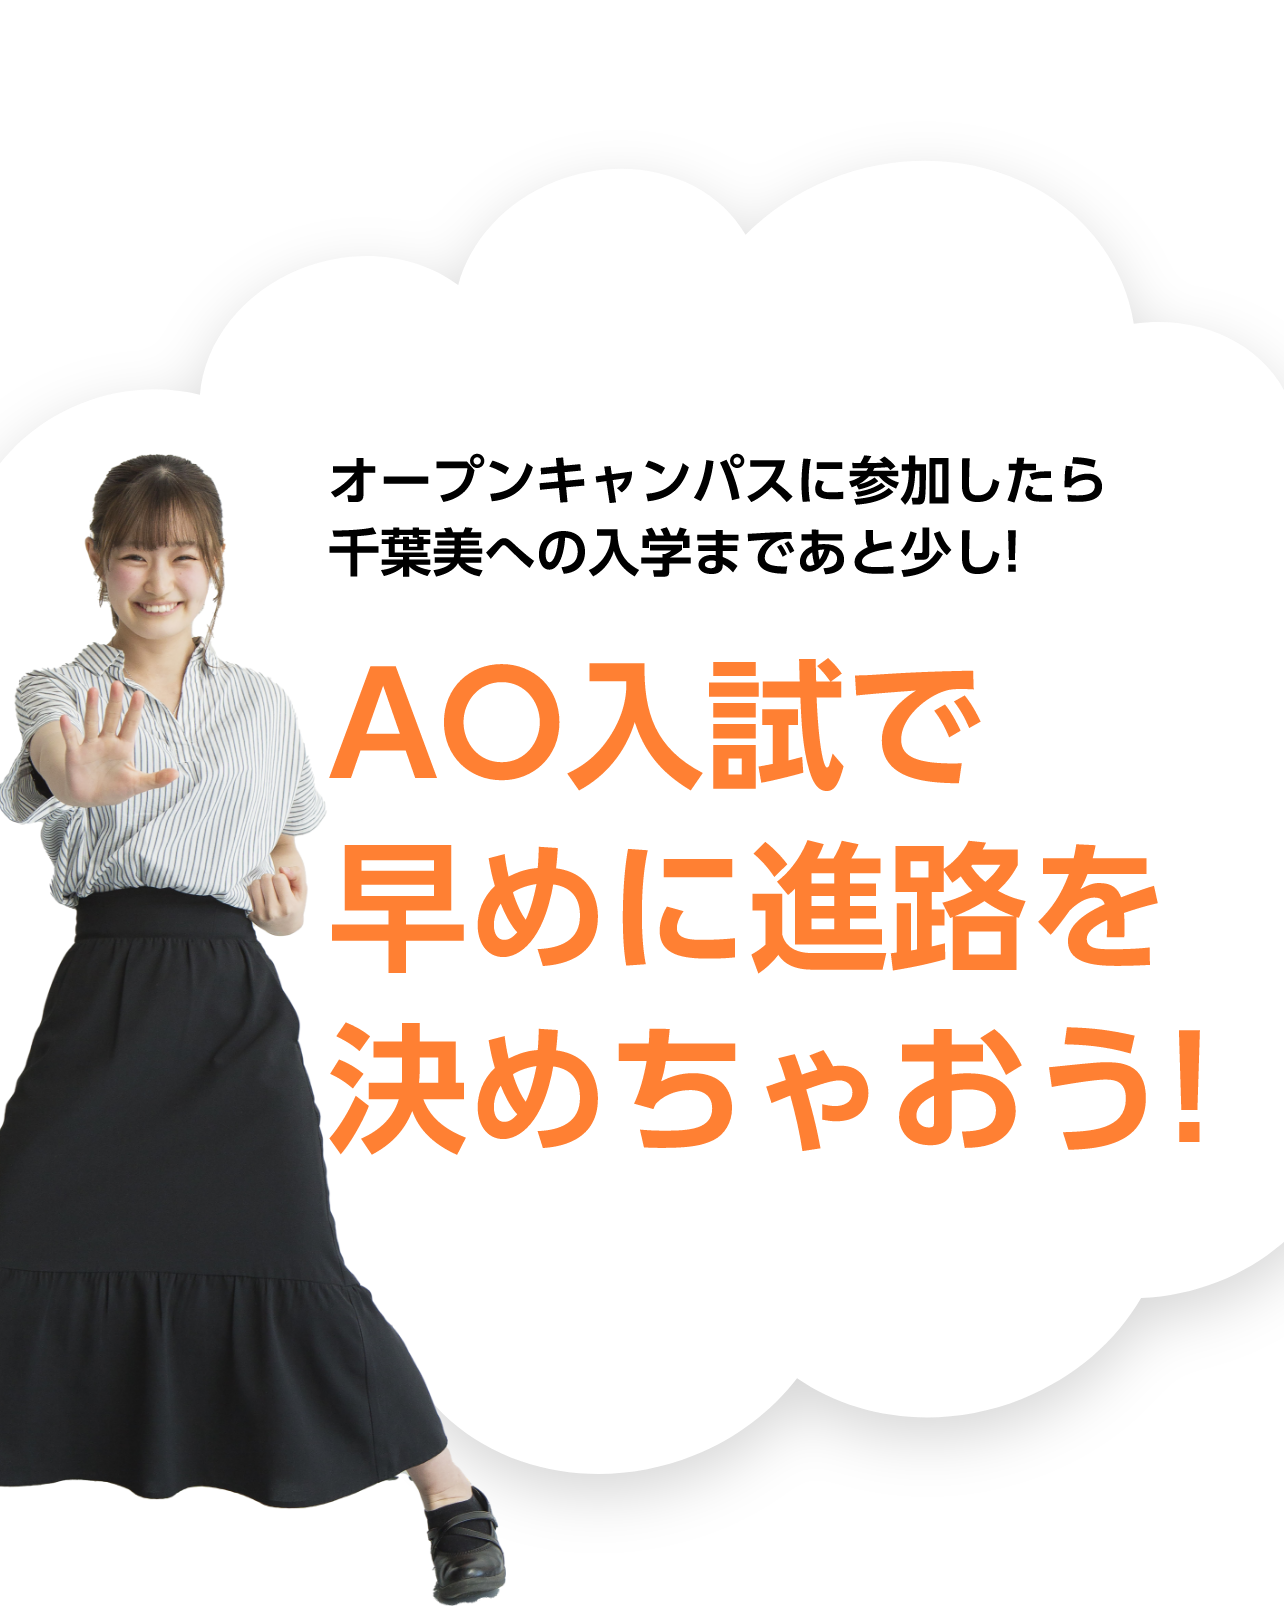 オープンキャンパスに参加したら千葉美への入学まであと少し! AO入試で早めに進路を決めちゃおう!